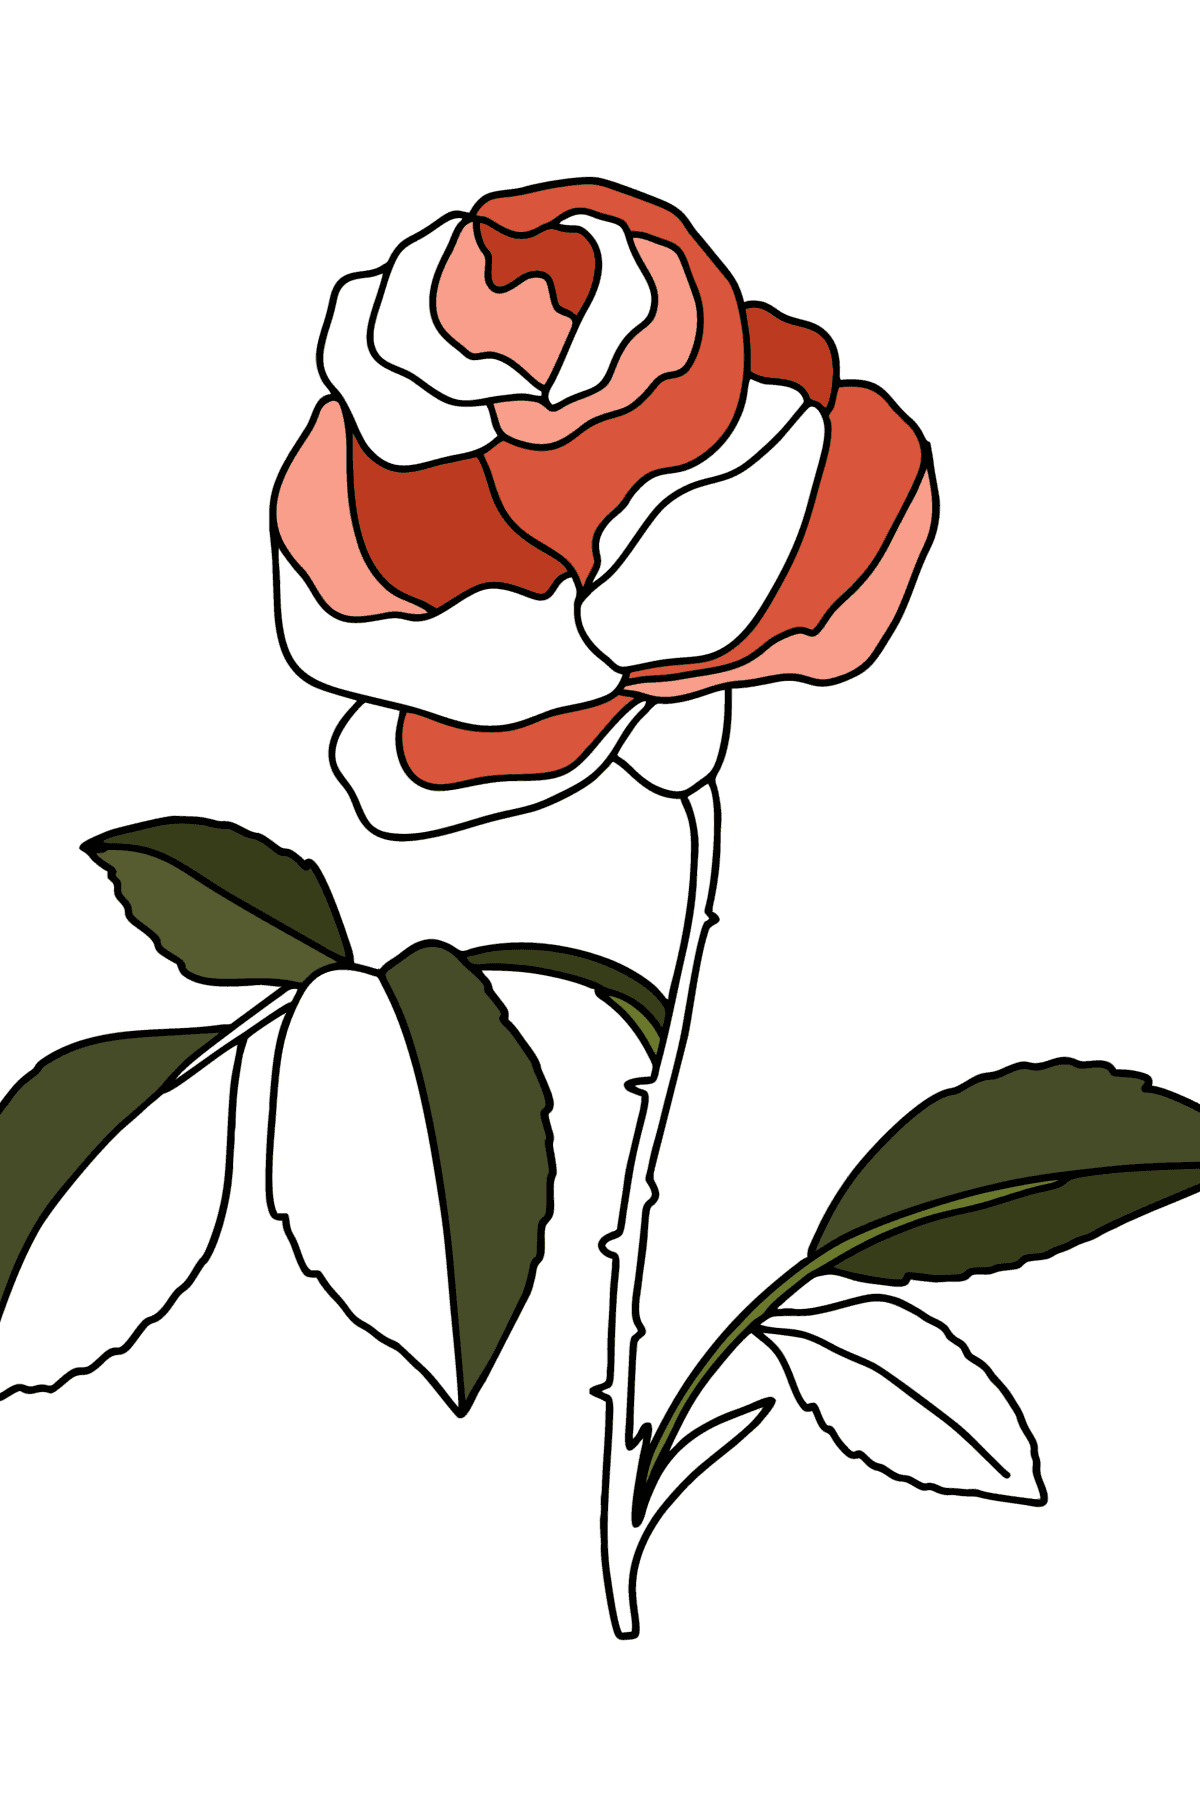 Disegno di Rosa rossa da colorare - Disegni da colorare per bambini